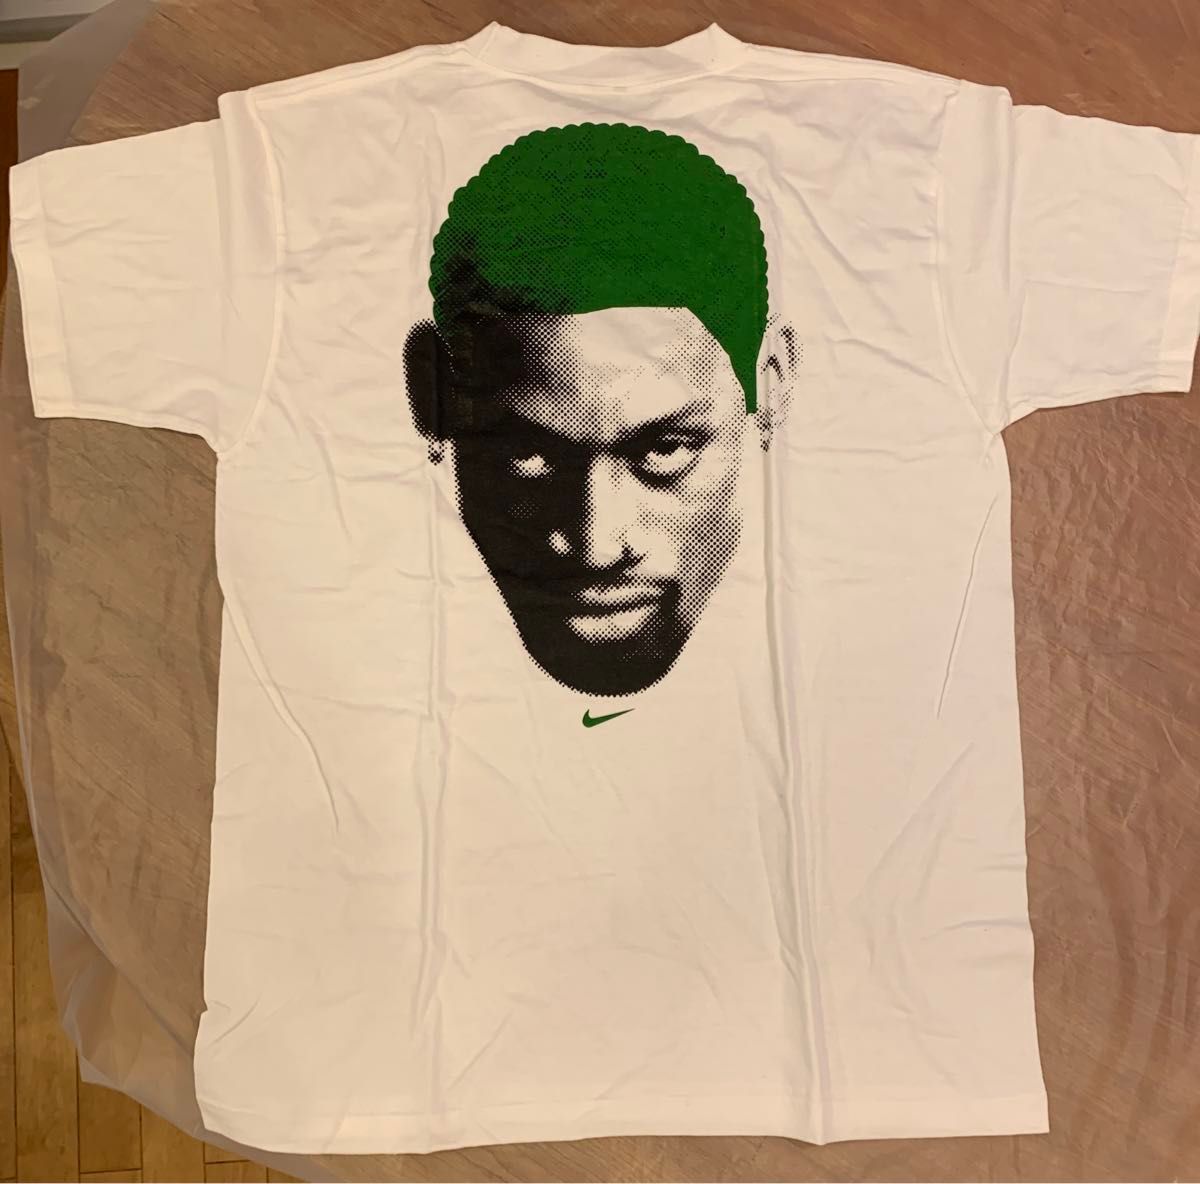 デニス ロッドマン ナイキ Tシャツ USA製 白/緑 US Lサイズ 【デッドストック】 Nike